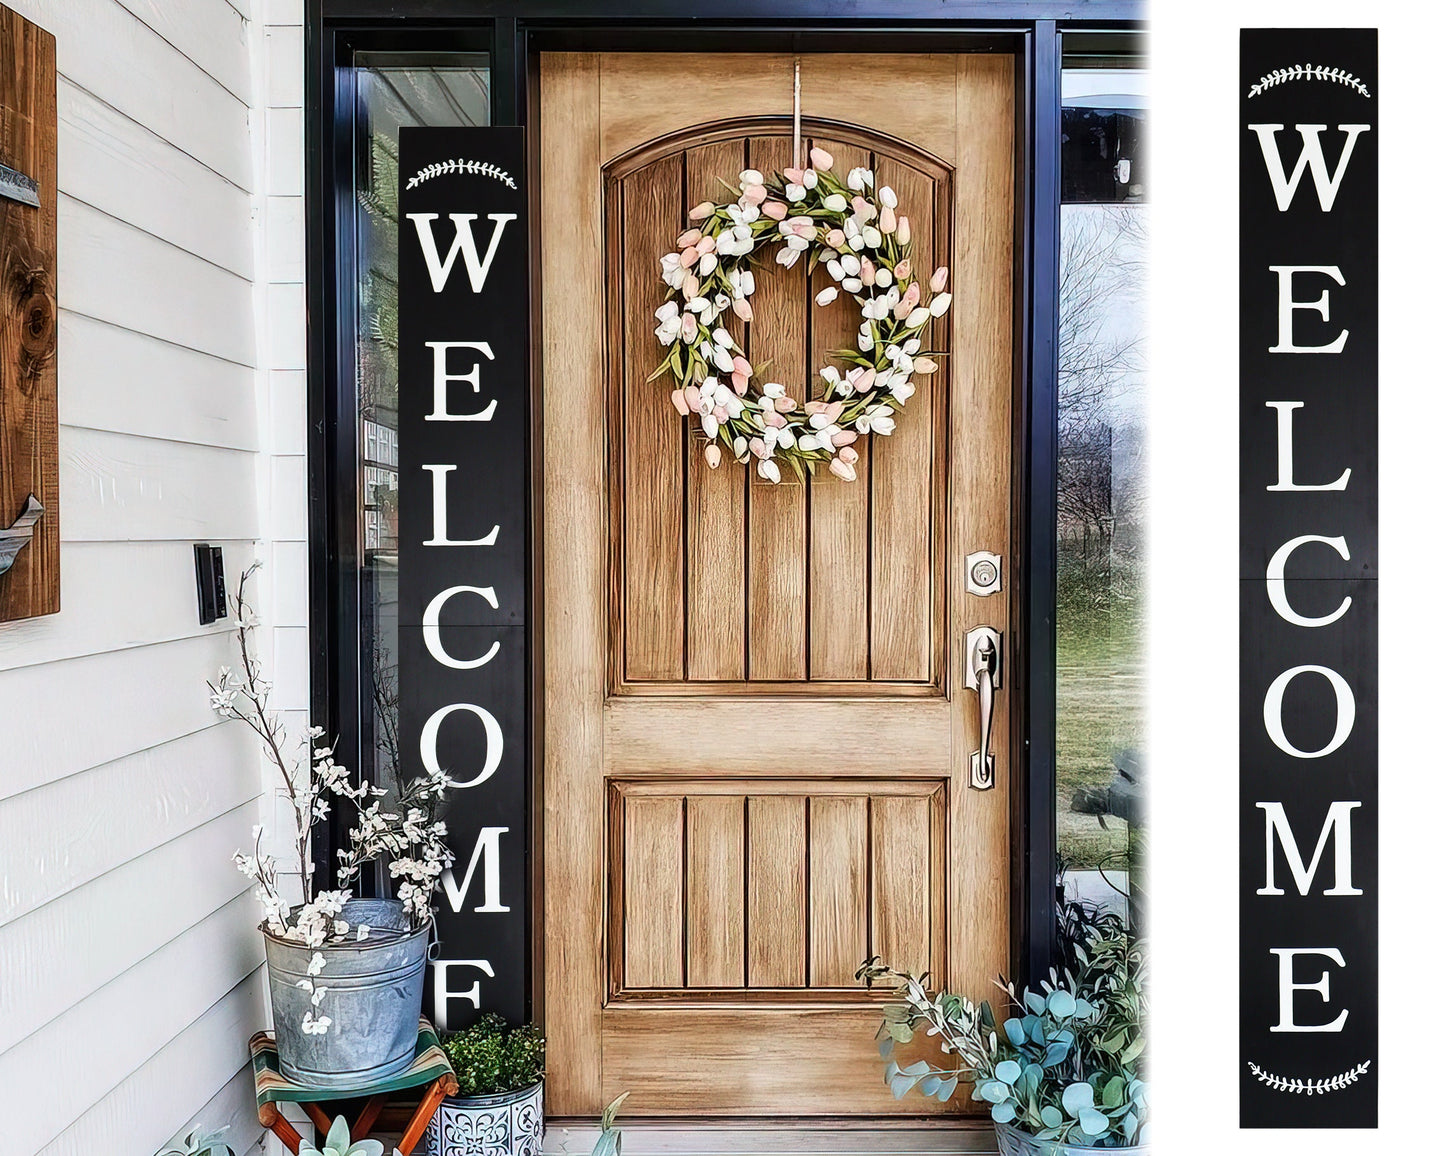 72in Outdoor Welcome Sign | Black Front Door Decor | Rustic Tall Welcome Sign | Front Porch Decor